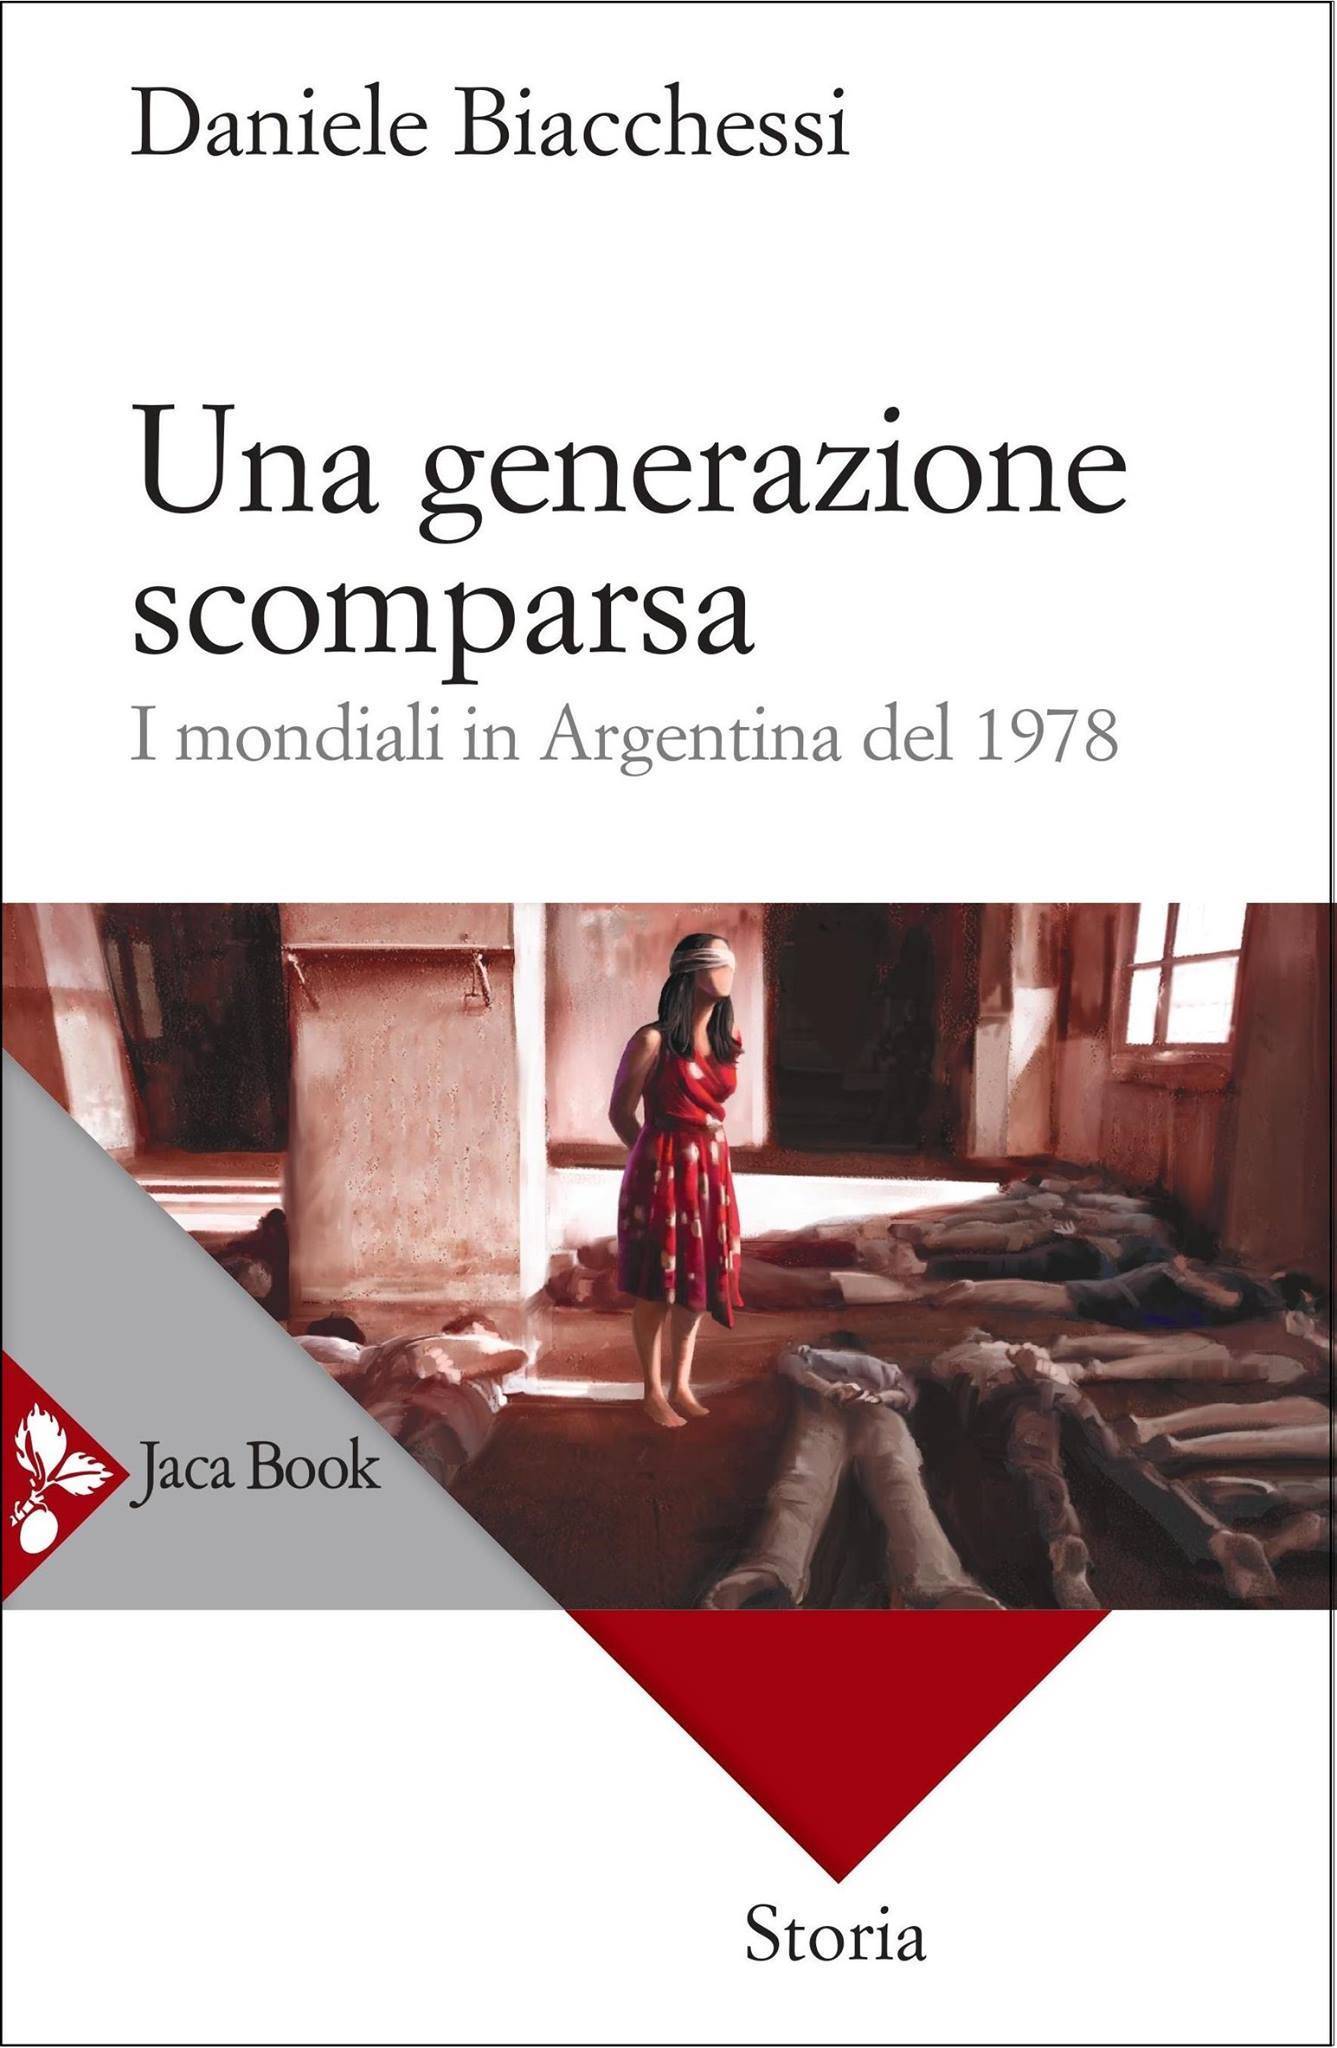 Libro di Daniele Biacchessi - Una generazione scomparsa